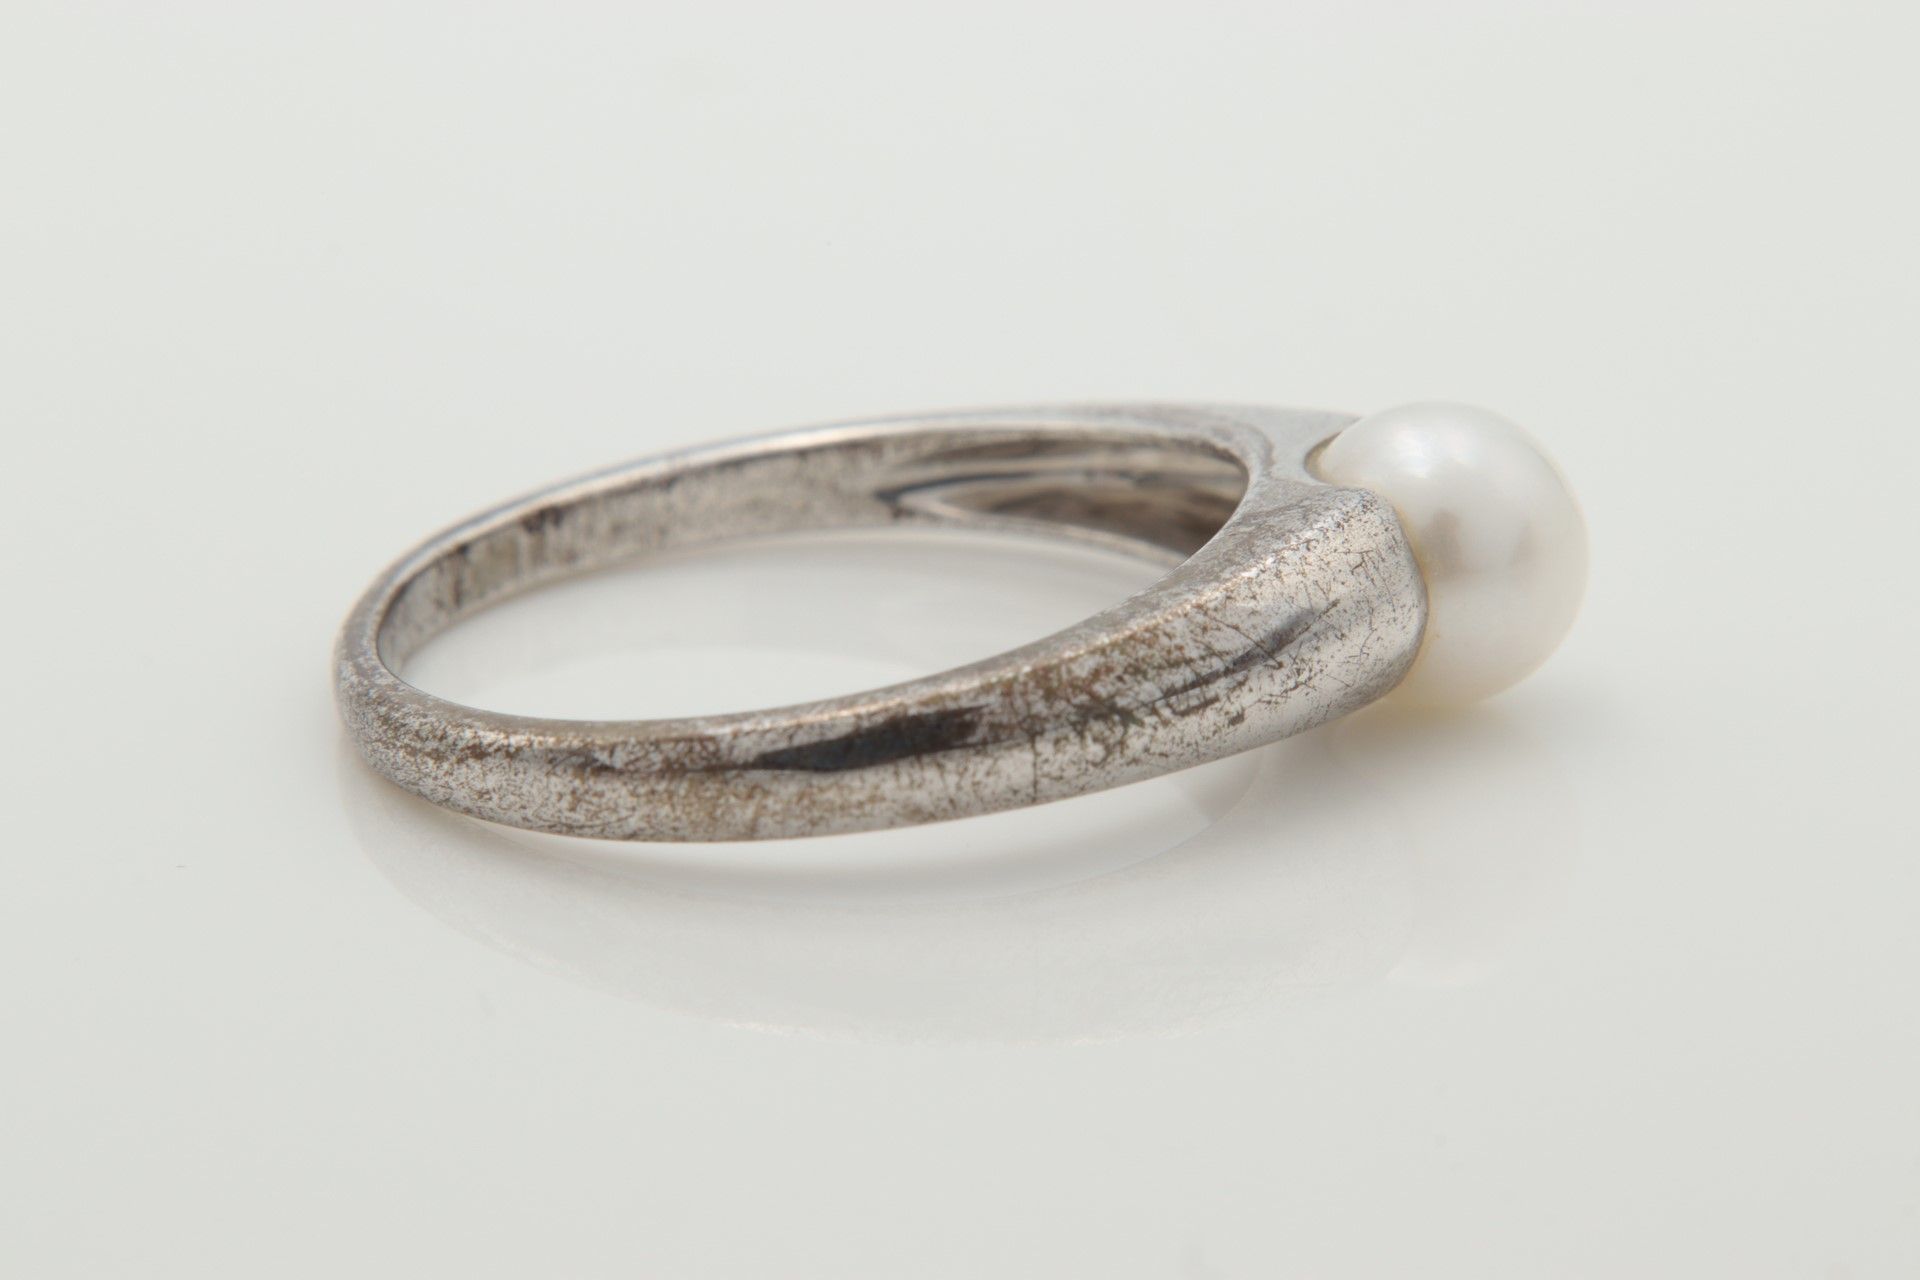 Damenring Silber 925, Ringkopf besetzt mit einer weißen Kunstperle, min Tragesp.,RW63 - Image 5 of 5